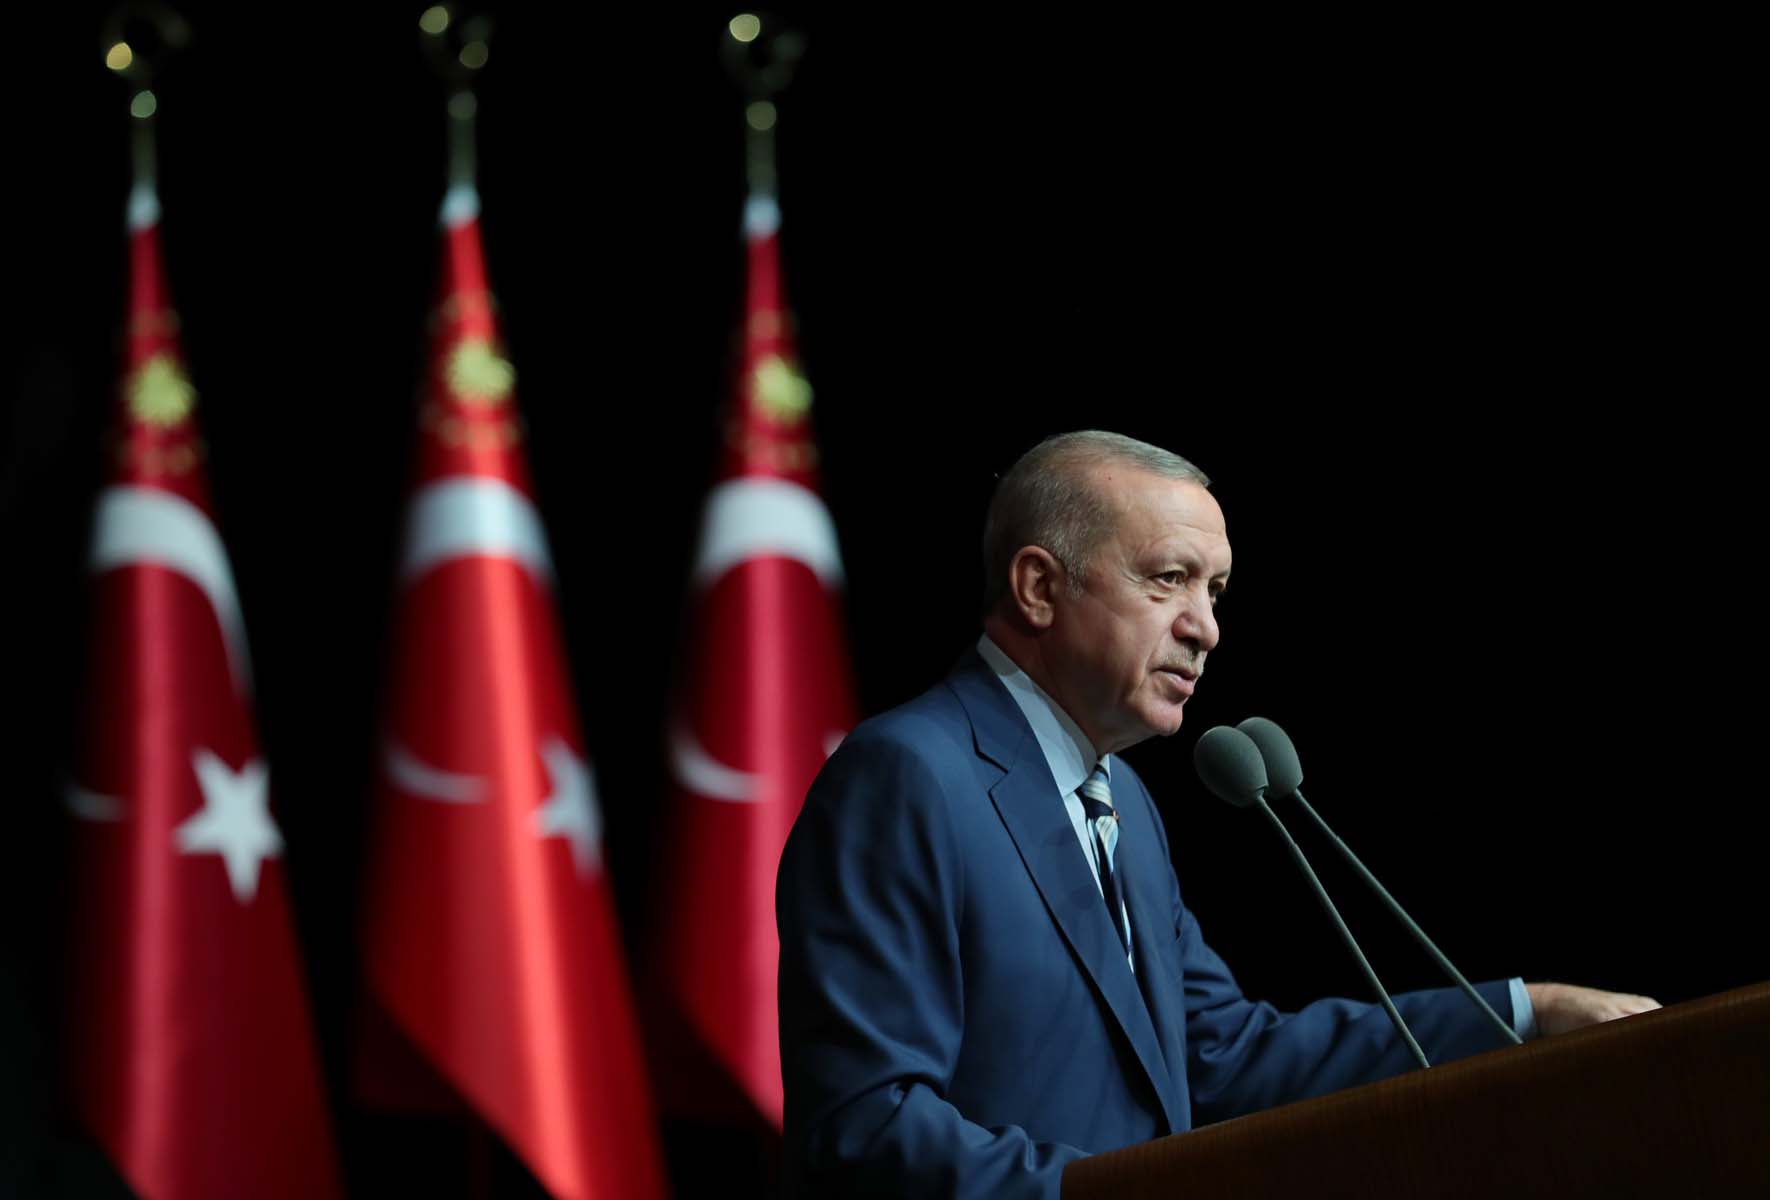 Cumhurbaşkanı Erdoğan, 6 .Uluslararası İyilik Ödülleri töreninde konuştu! Diyarbakır annelerinin kapısını çalmaktan korkan siyasetçi müsveddelerini de gördük 